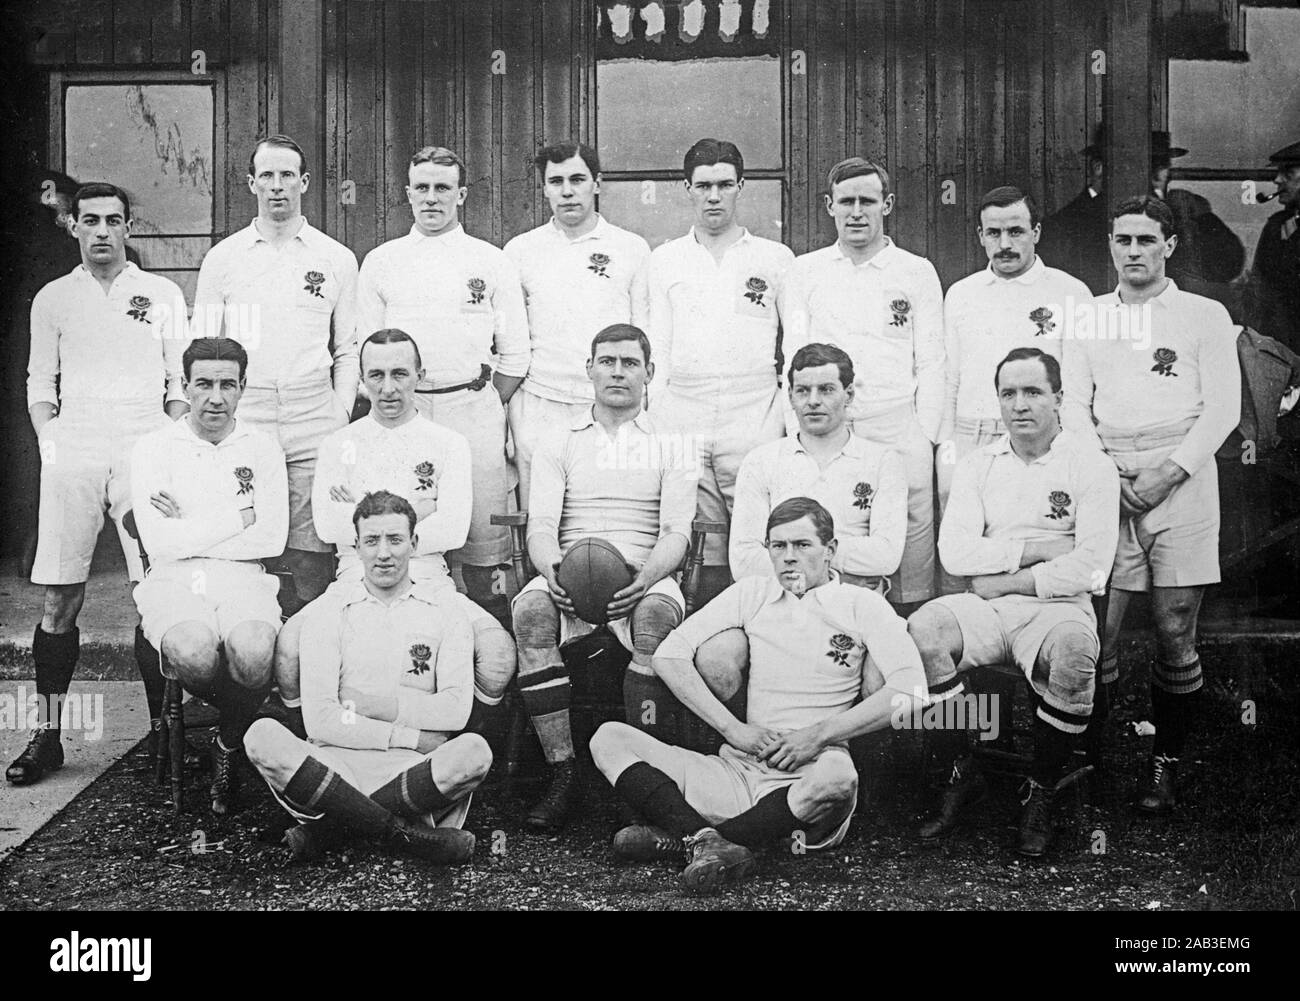 Vintage photo de l'équipe de rugby de l'Angleterre en 1909 pour leur match contre l'Irlande. Les joueurs étaient : Le juge (Leicester), Edgar Mobbs (Northampton), Cyril Wright (Université de Cambridge), Ronnie Poulton-Palmer (Université d'Oxford), AC Palmer (Londres), H. Hutchinson (F) HJH Sibree Headingley (Harlequins), HJS Morton (Université de Cambridge), Robert Dibble (London & Albion) capt., WA Johns (Gloucester), AL Kewney (Leicester), AJ Wilson (Camborne School of Mines), FG Handford (Manchester), H Archer (Guy's Hospital), et Headingley (Ibbitson). L'Angleterre a gagné le match 11-5. Banque D'Images